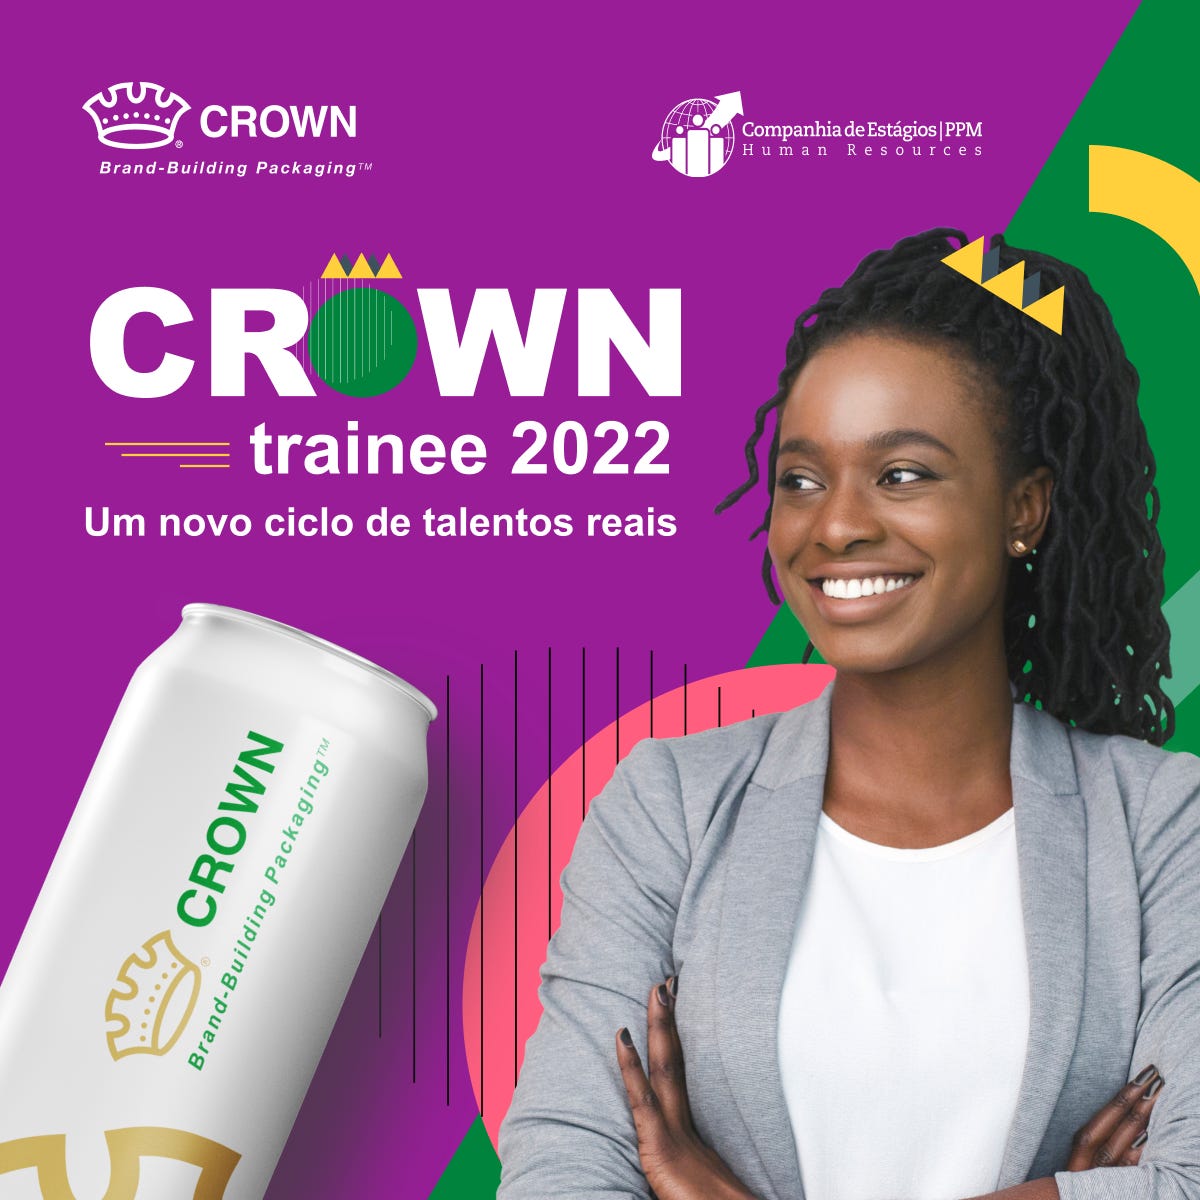 Crown Trainee 2022. Um novo ciclo de talentos reais. Desenho de lata com logo da Crown. Jovem negra sorrindo tem ilustração de coroa em sua cabeça.